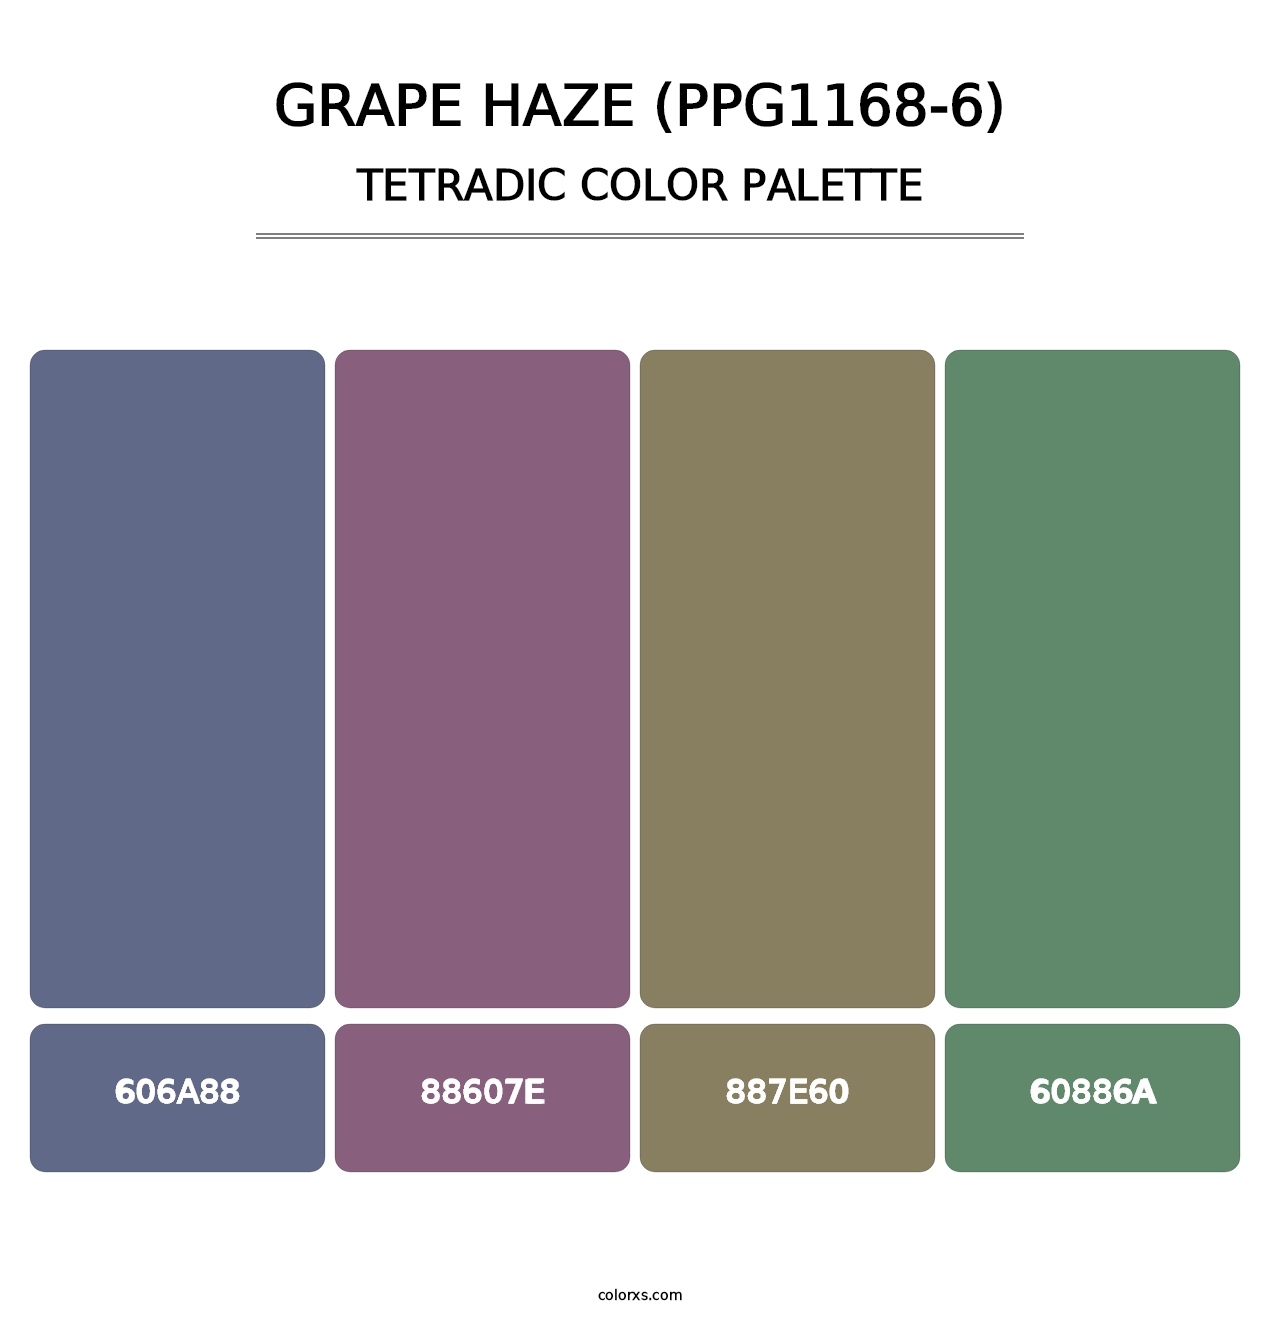 Grape Haze (PPG1168-6) - Tetradic Color Palette